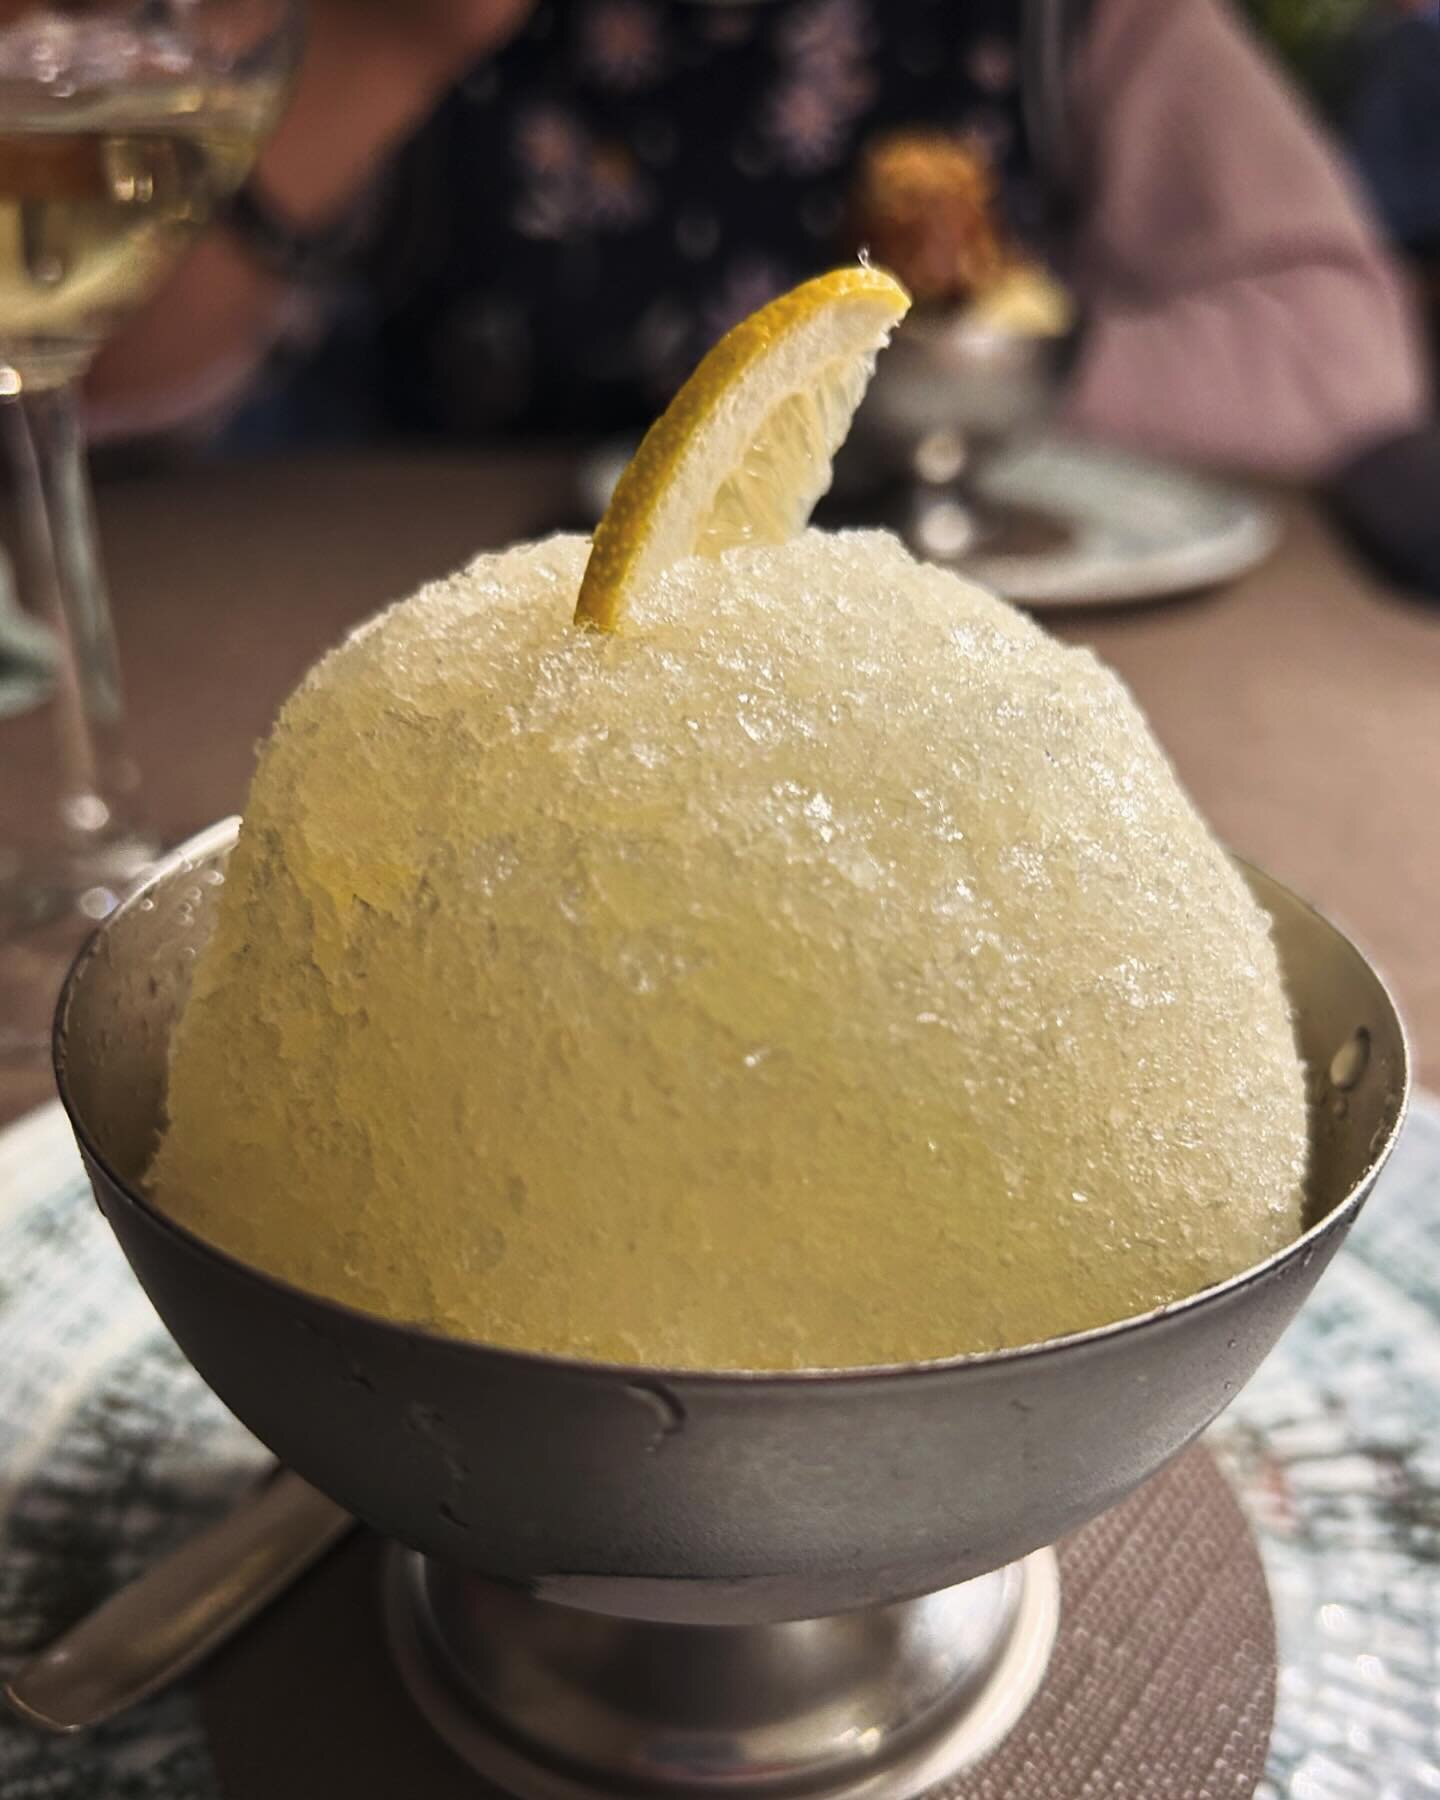 can&rsquo;t go to Sicily without having granita 🍋 💛🍧 
(and a bright grillo from @feudo_montoni_fabio_sireci)

#ASicilianExperience

#Granita #Sicilian #Lemon #Palermo #Bright #Dessert